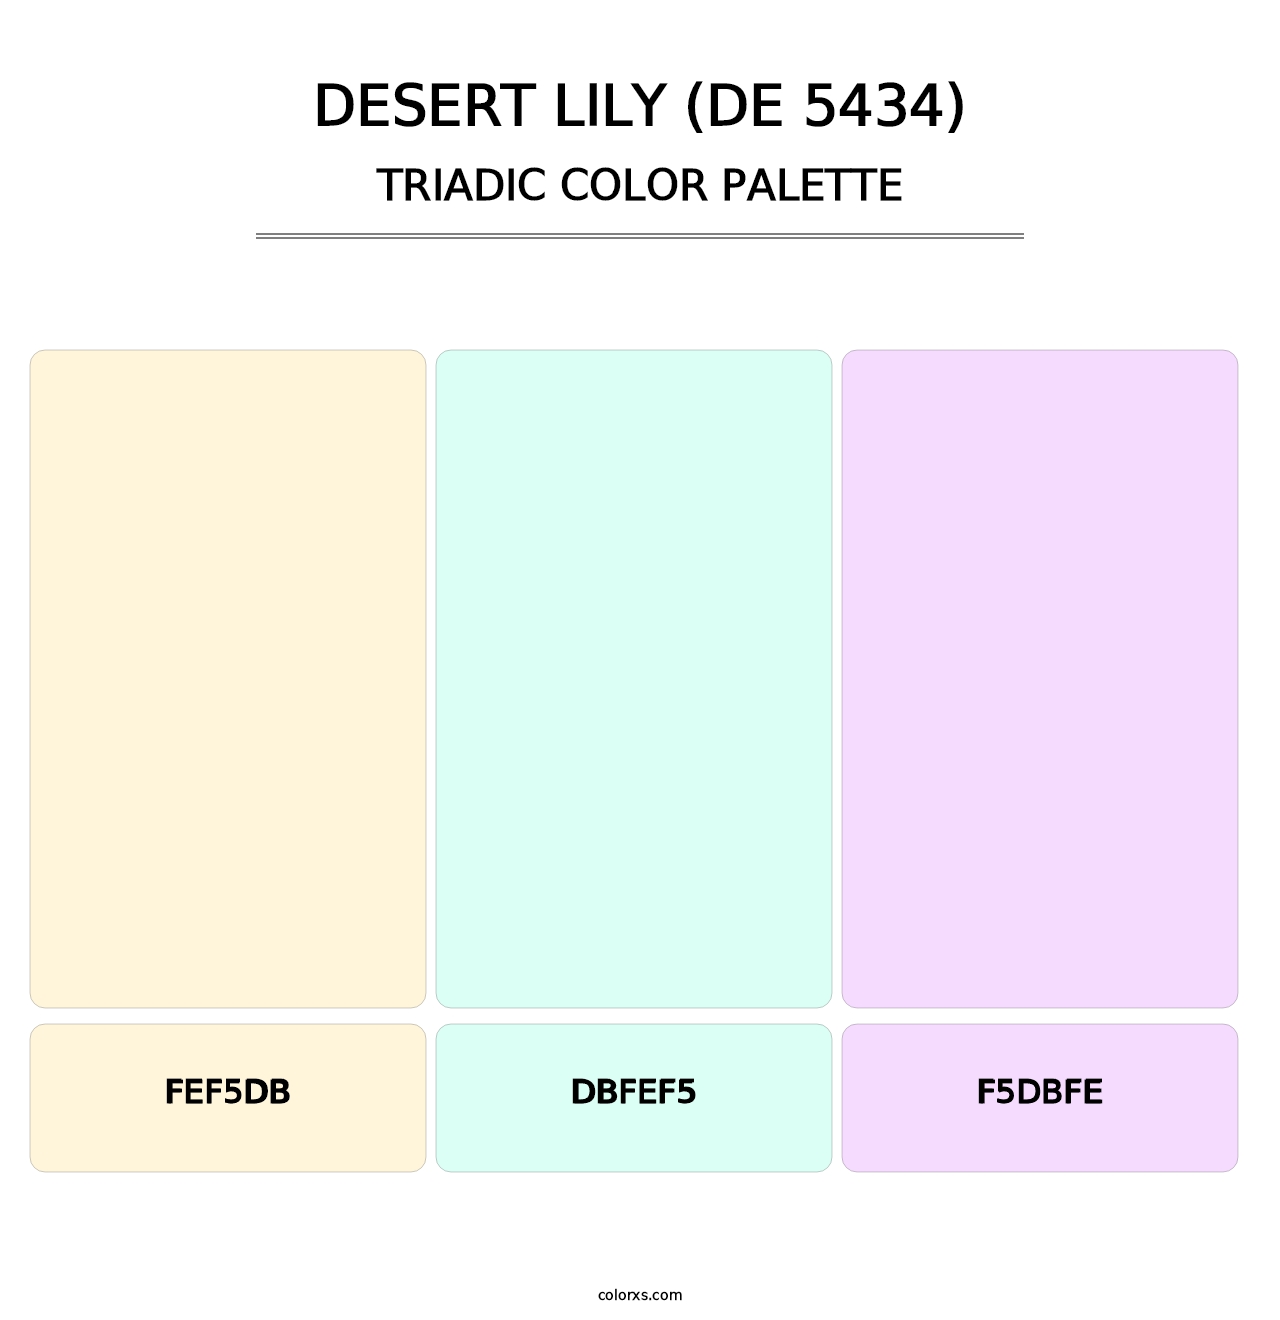 Desert Lily (DE 5434) - Triadic Color Palette